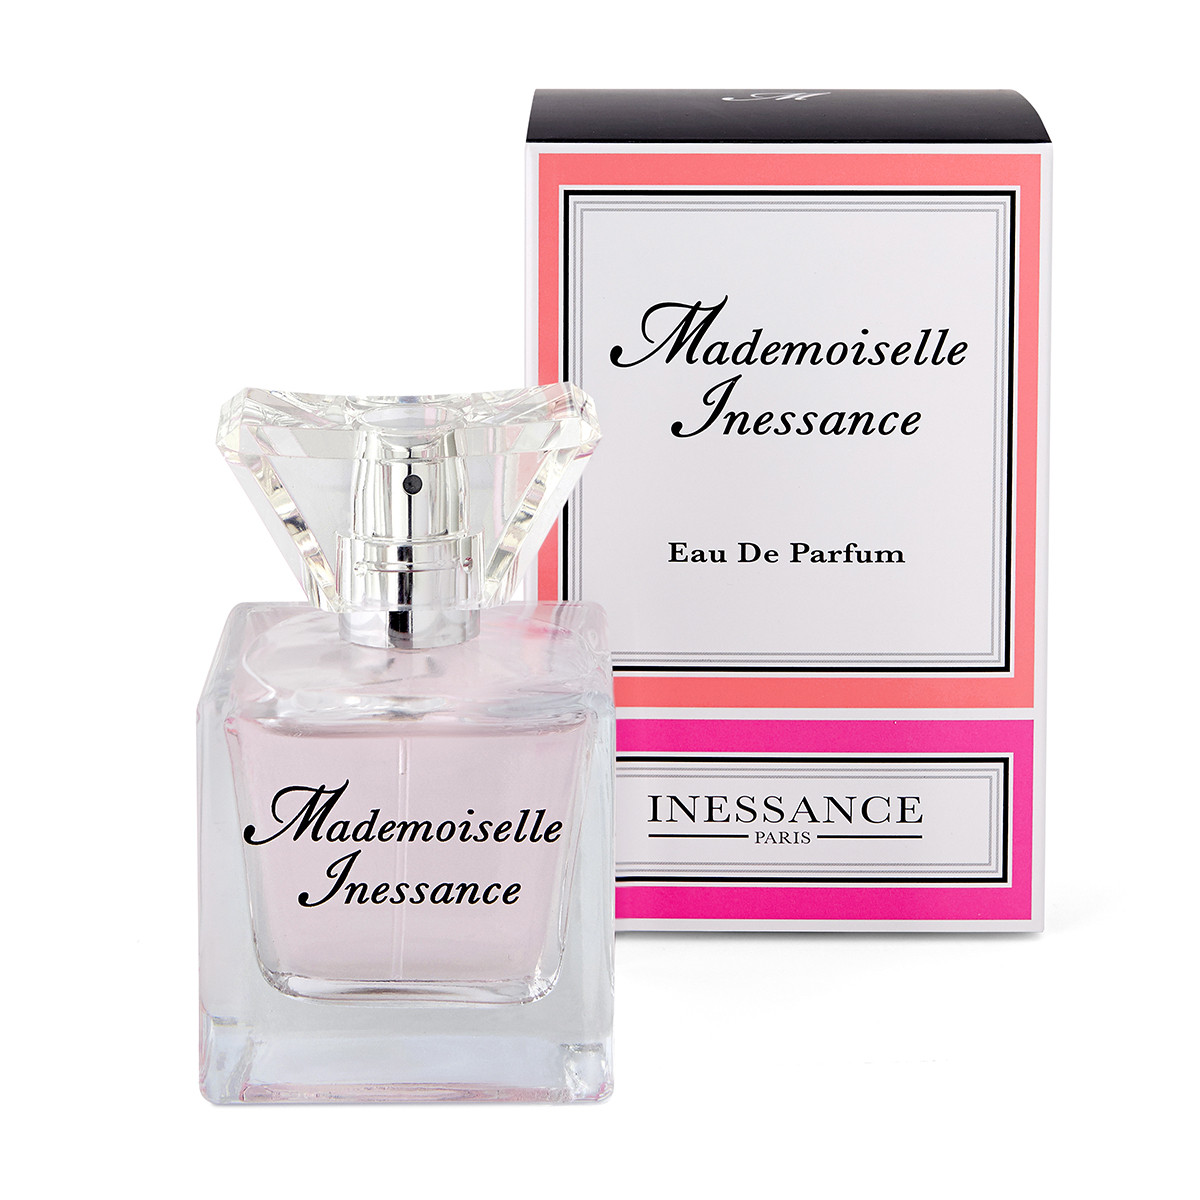 Mademoiselle Inessance - Eau de Parfum - 50ml